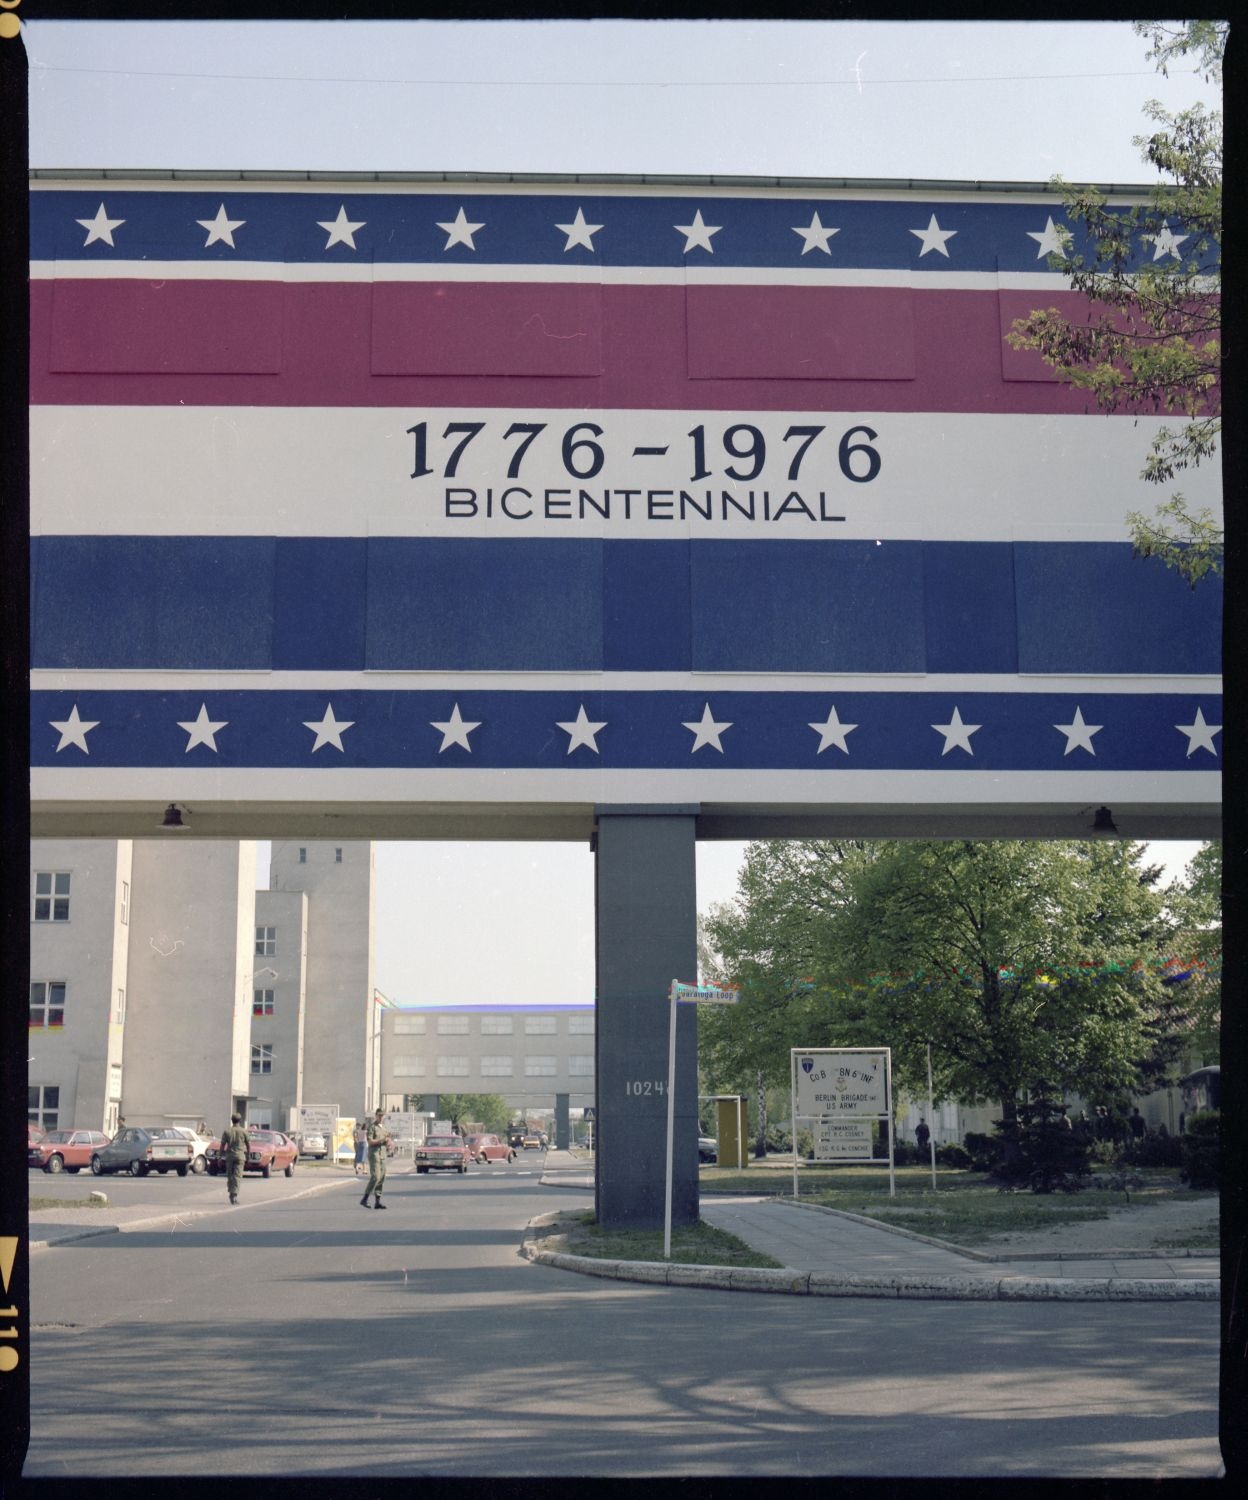 Fotografie: Wandbild zum 200. Jahrestag der Unabhängigkeitserklärung der USA in den McNair Barracks in Berlin-Lichterfelde (AlliiertenMuseum/U.S. Army Photograph Public Domain Mark)